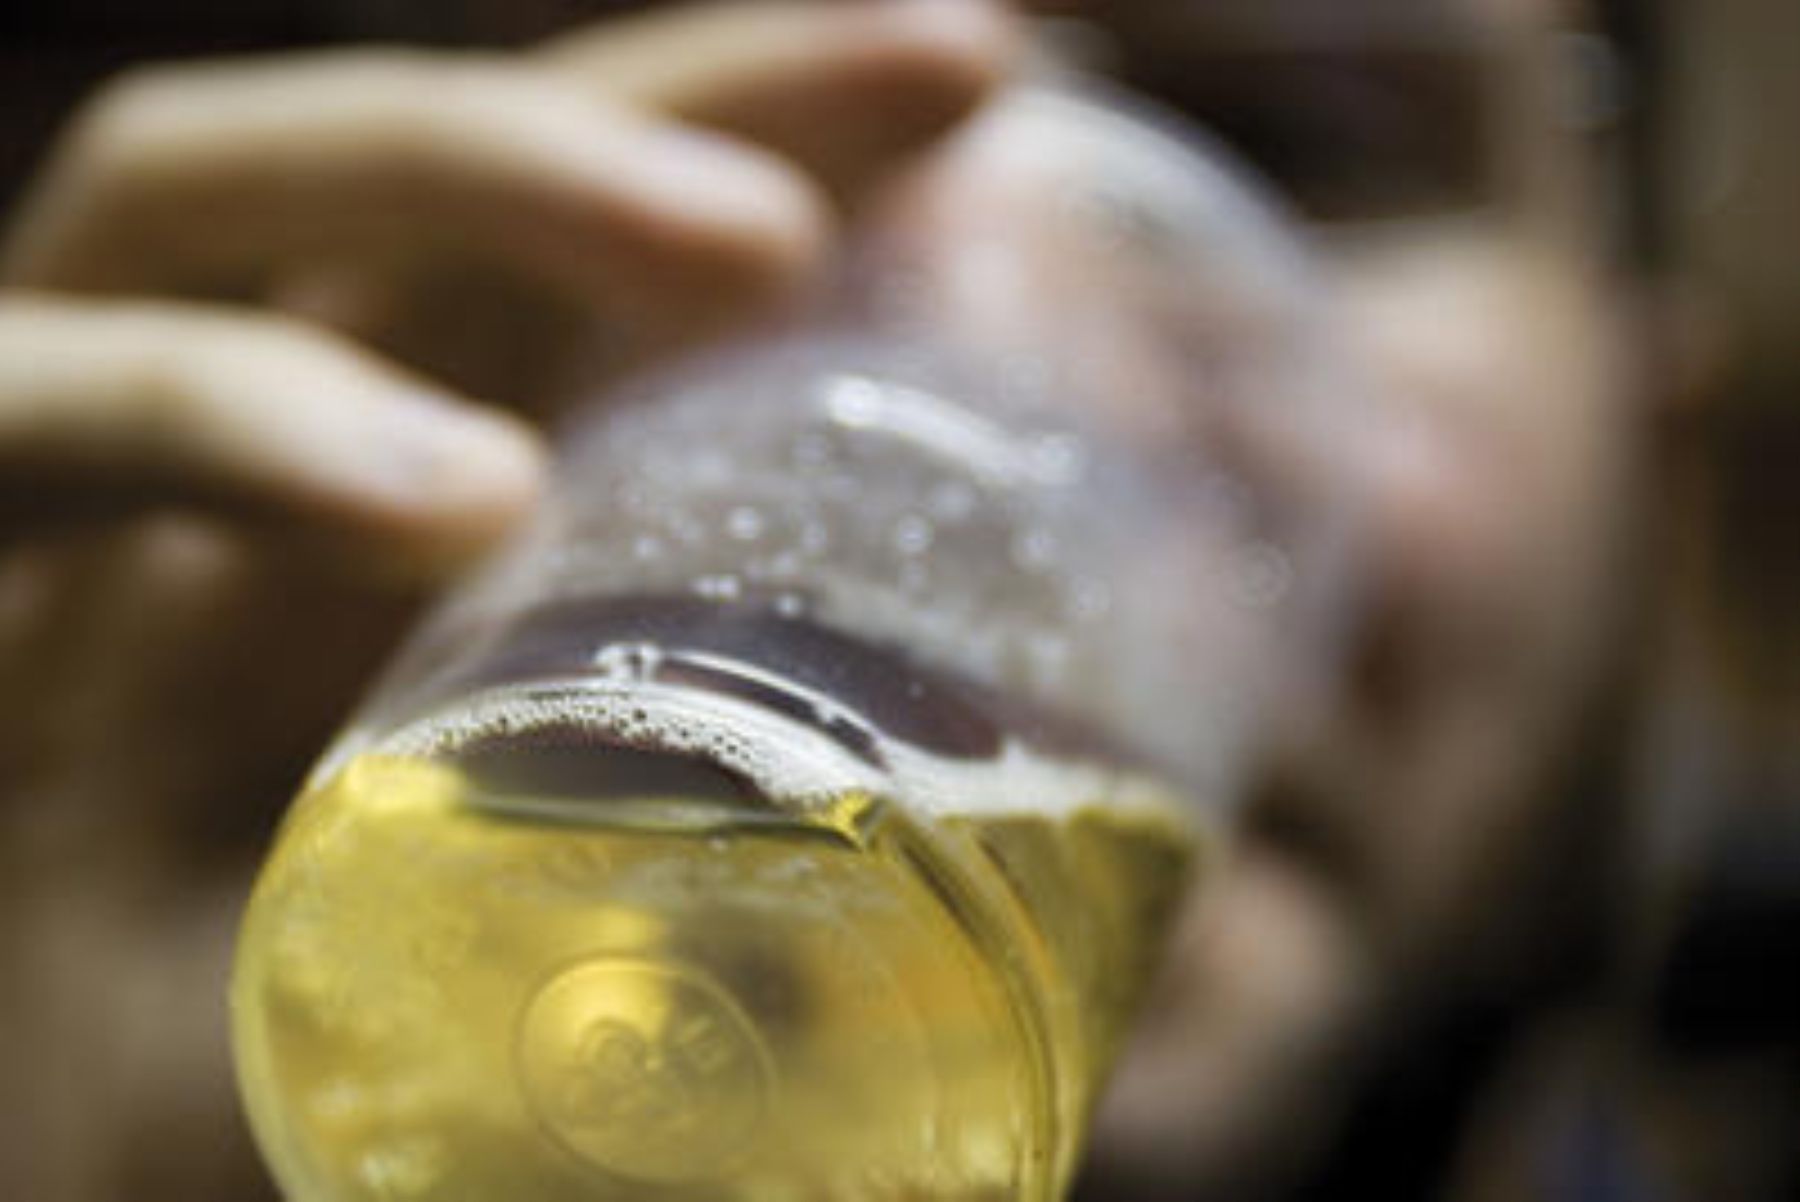 Los varones que consumen alcohol y cocaína tienen 12,3 veces más riesgo de padecer alcoholismo.